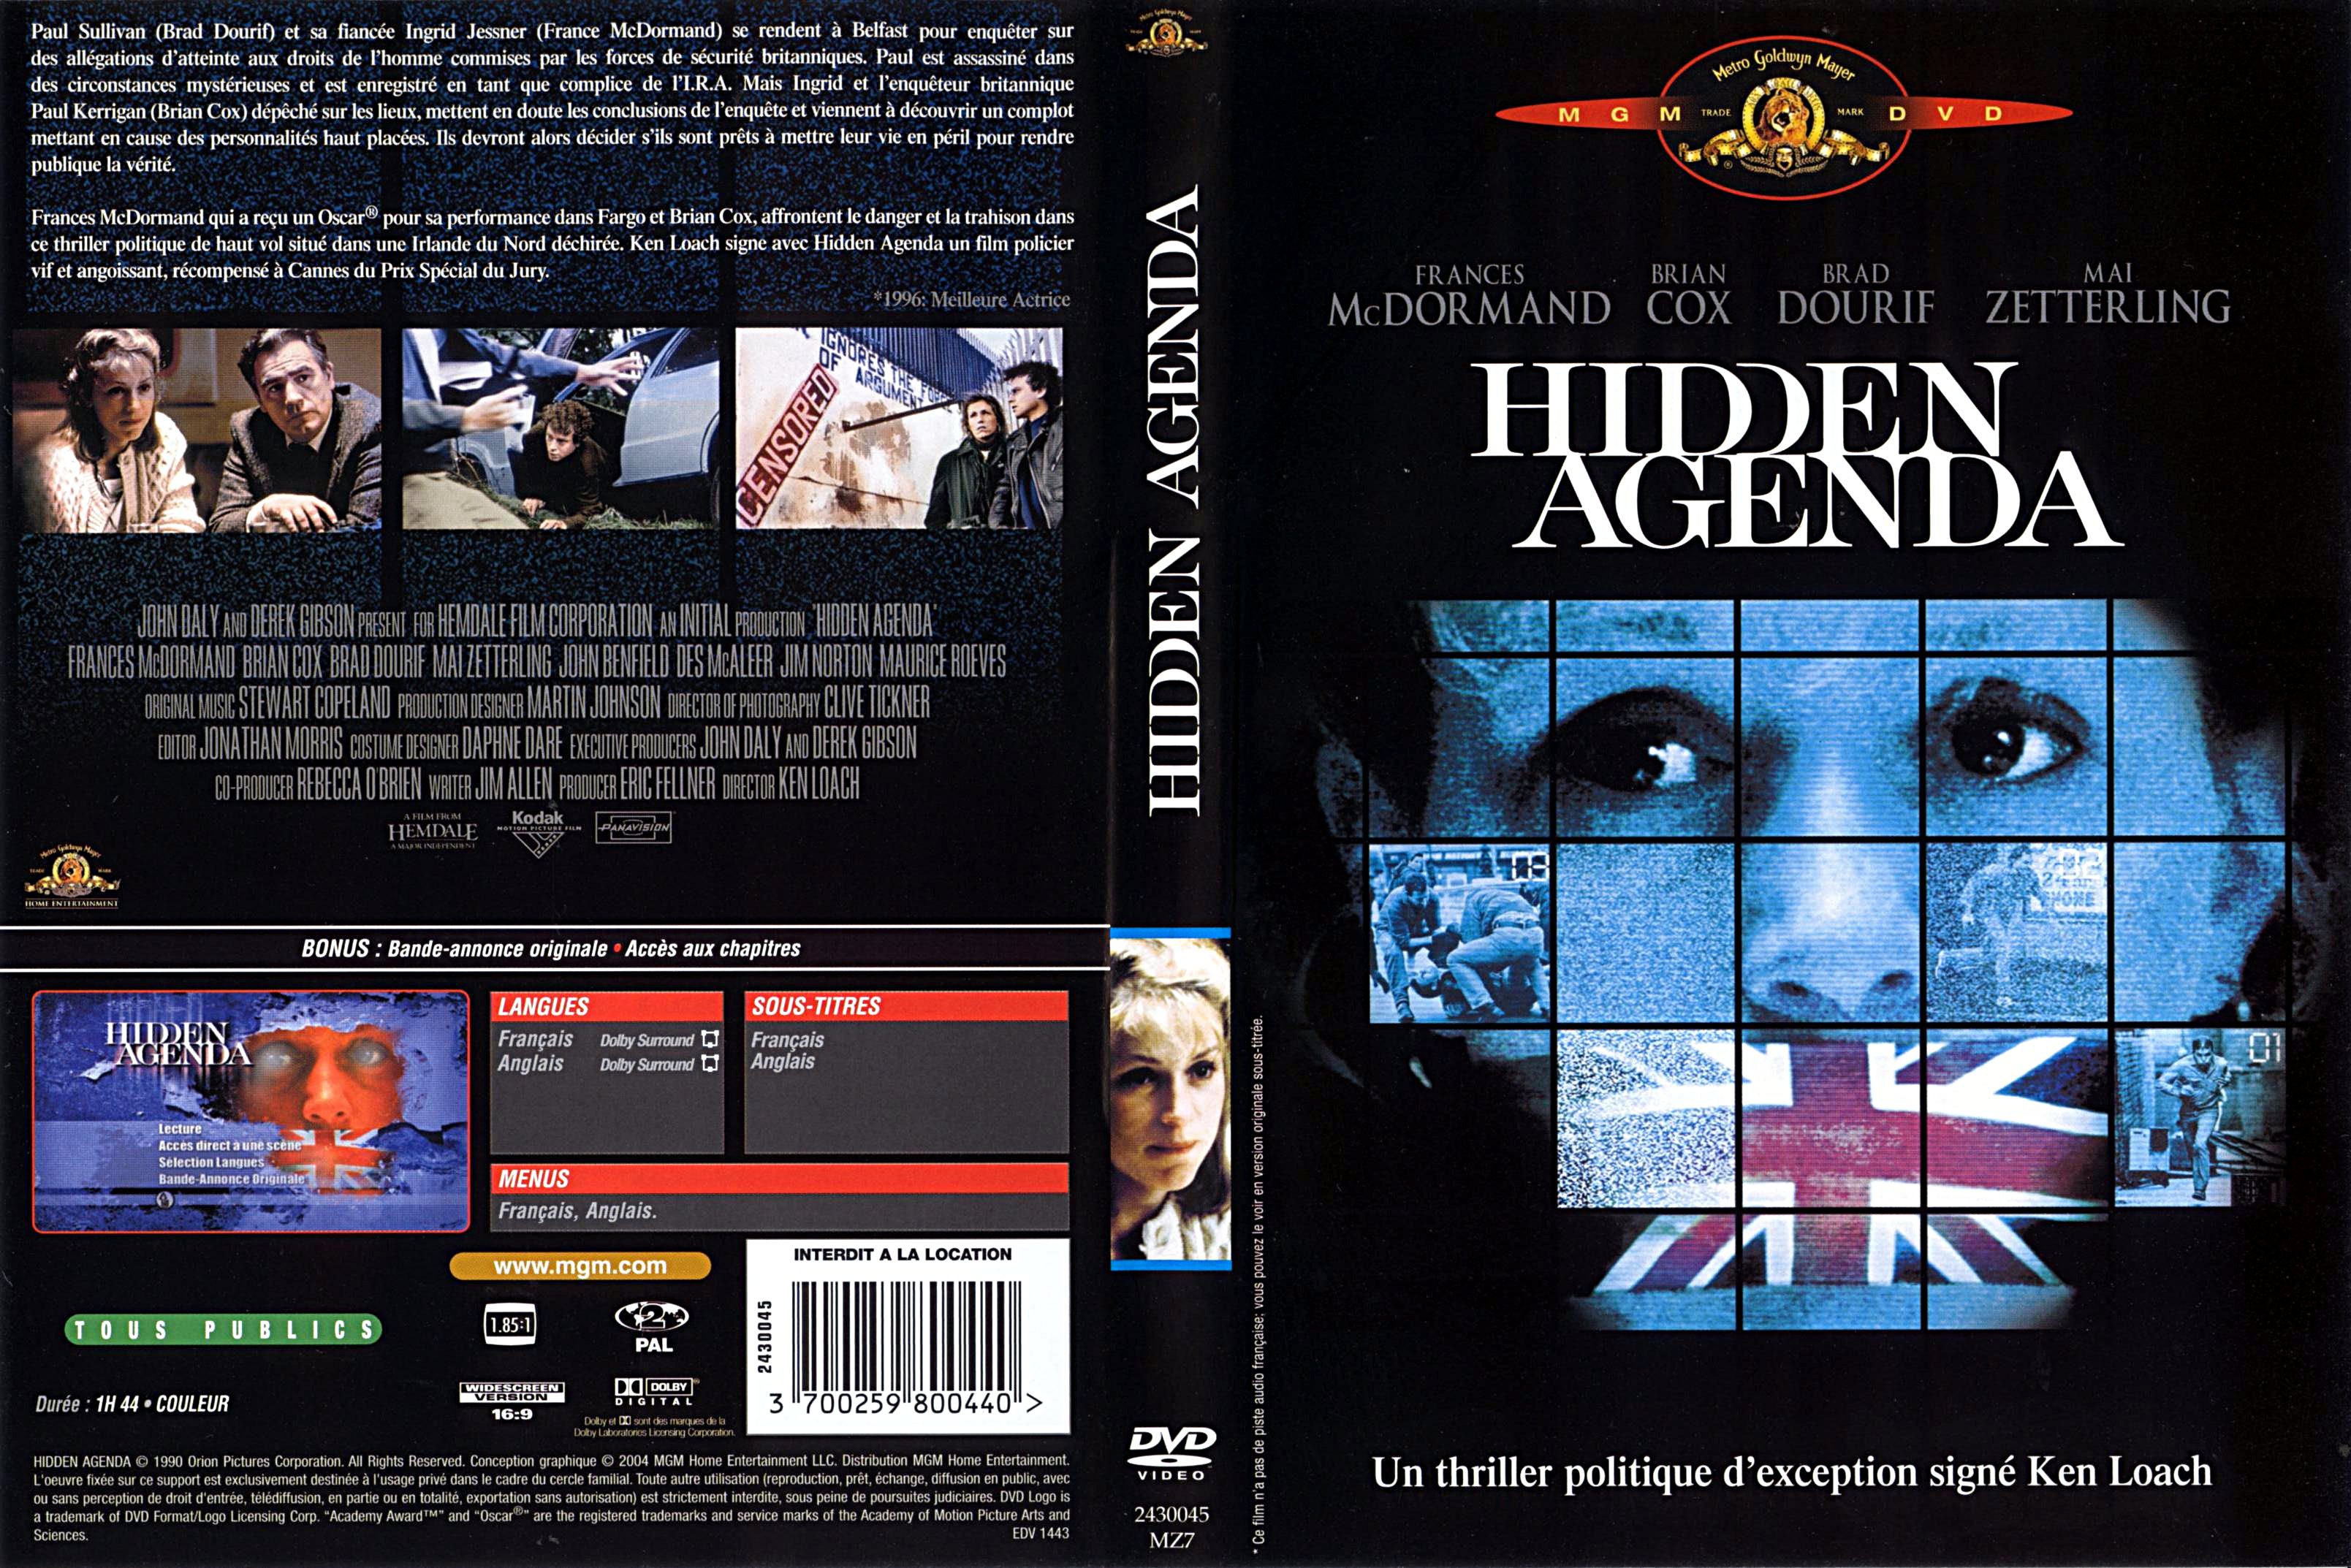 Jaquette DVD Hidden agenda (Ken Loach)